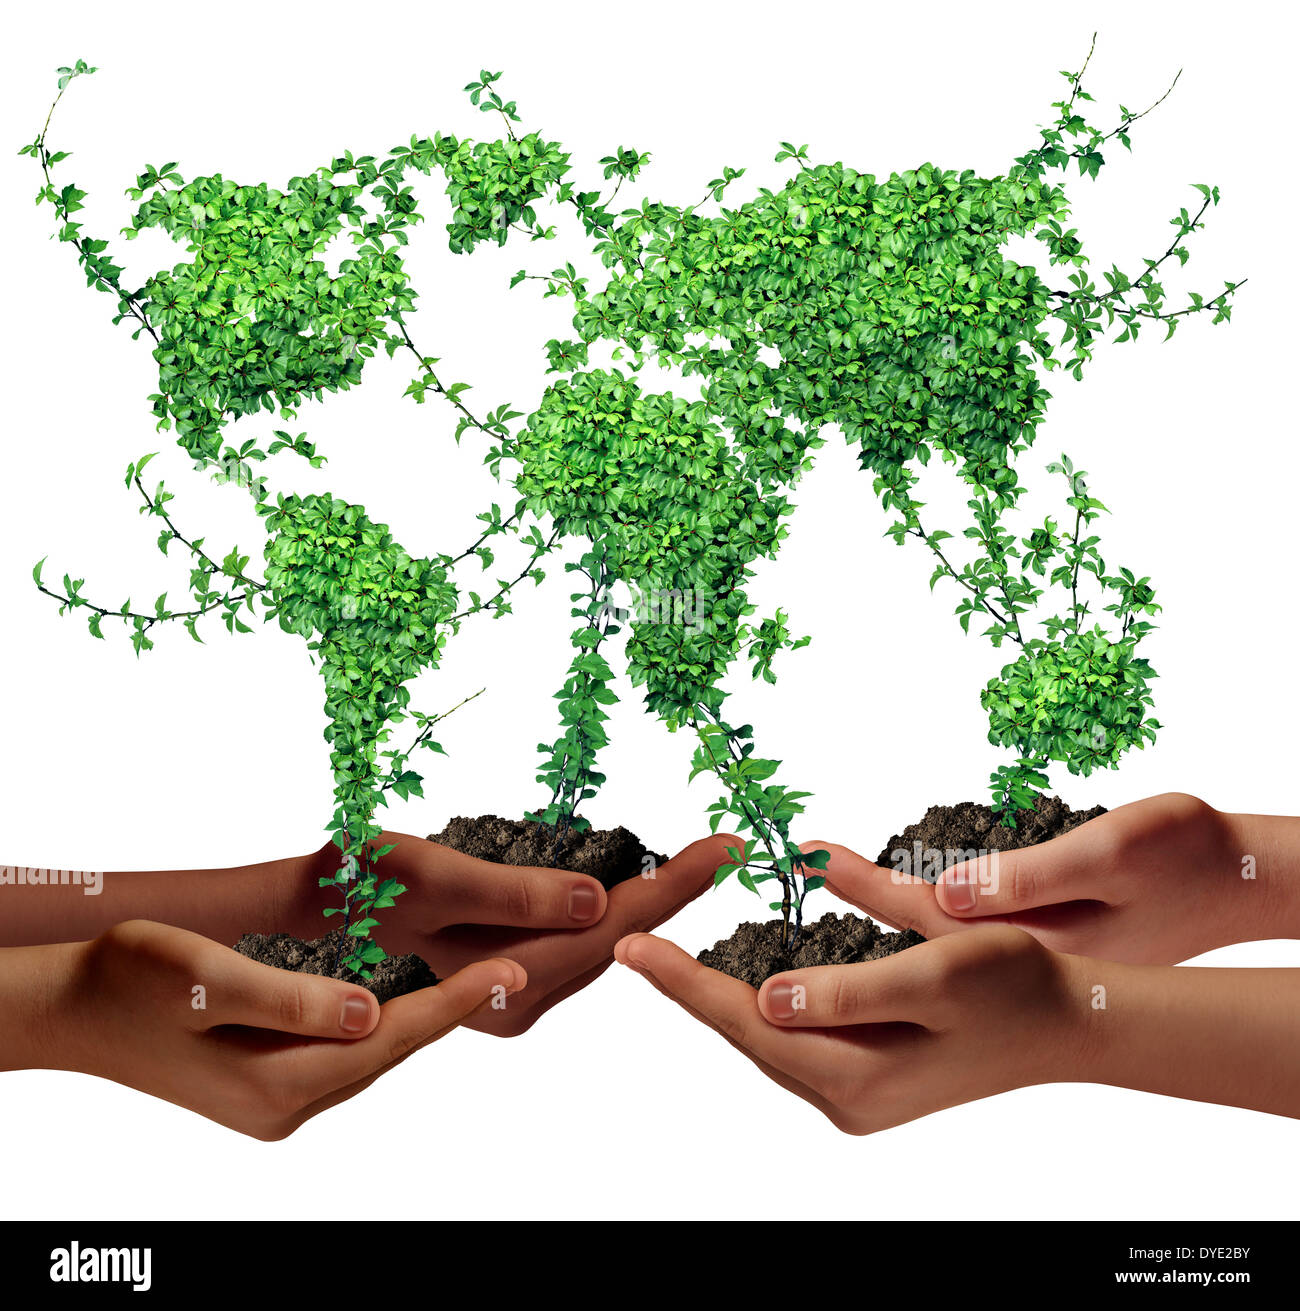 Ambiente e comunità business development concept come un gruppo globale di etnia mani piante verdi con foglie conformato come il mondo come una metafora per la crescita di un economia internazionale. Foto Stock